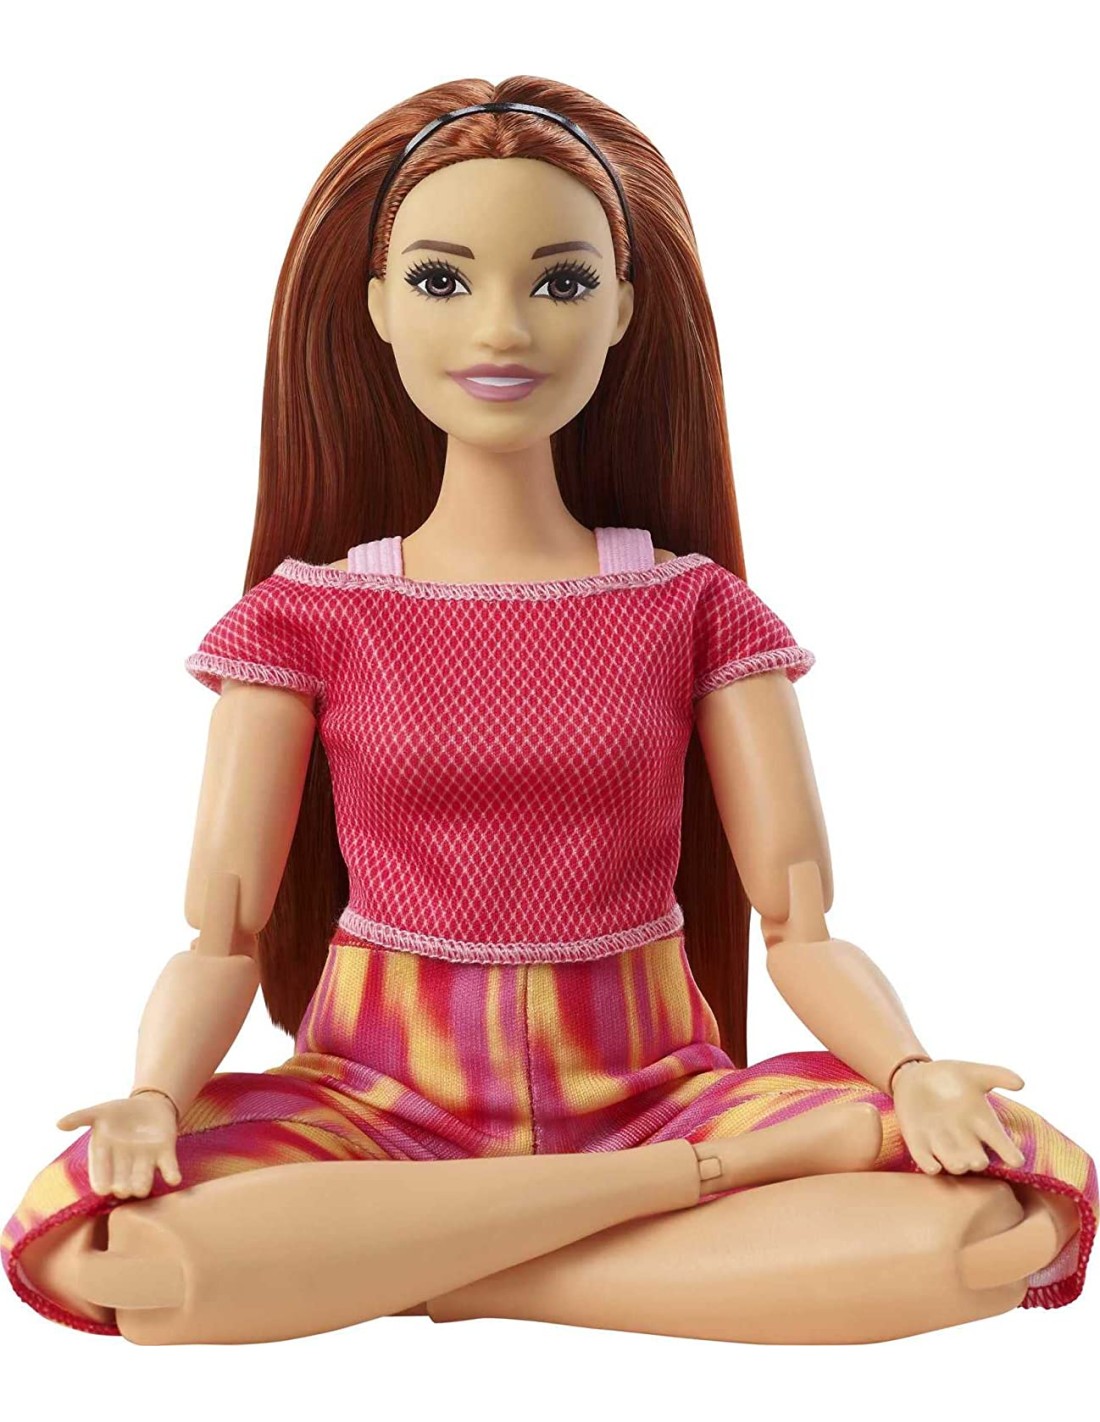 Barbie Bambola Snodata Curvy e Capelli Lunghi Rossi abito fucsia